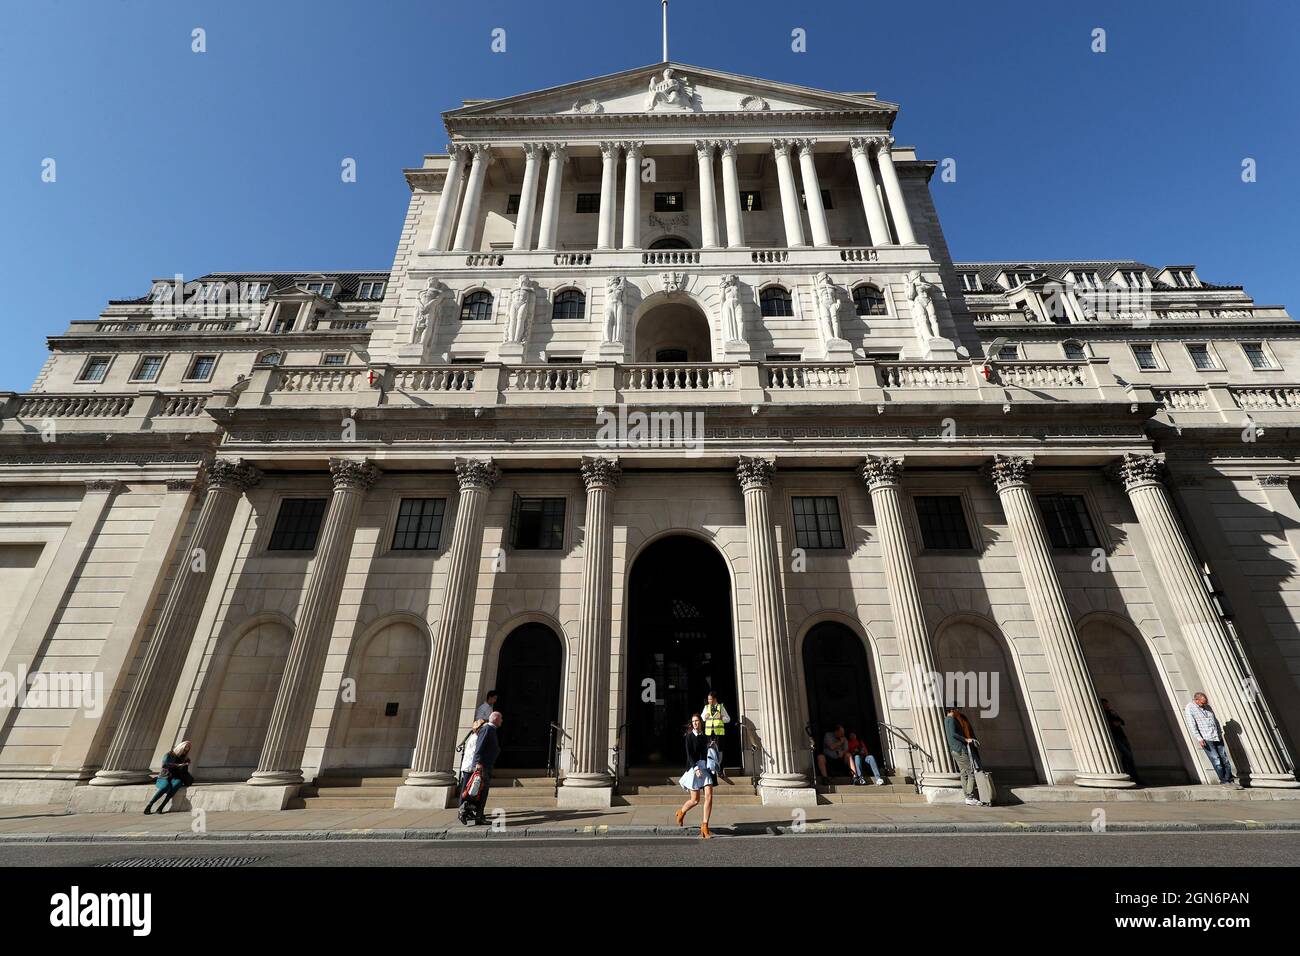 Foto del file datata 20/09/19 della Banca d'Inghilterra, nella città di Londra. La Banca d’Inghilterra si riunirà giovedì per decidere sui tassi di interesse, in quanto è sotto pressione crescente per raffreddare i prezzi in aumento dopo il più grande salto di inflazione per almeno 24 anni. L’ultimo verdetto del Comitato per la politica monetaria (MPC) segue il più grande balzo in avanti dell’inflazione, dal 2% di luglio al 3.2% di agosto, e si presenta tra i prezzi dell’energia in aumento. La Banca dovrebbe mantenere i tassi saldamente in attesa al 0.1% il giovedì. Foto Stock